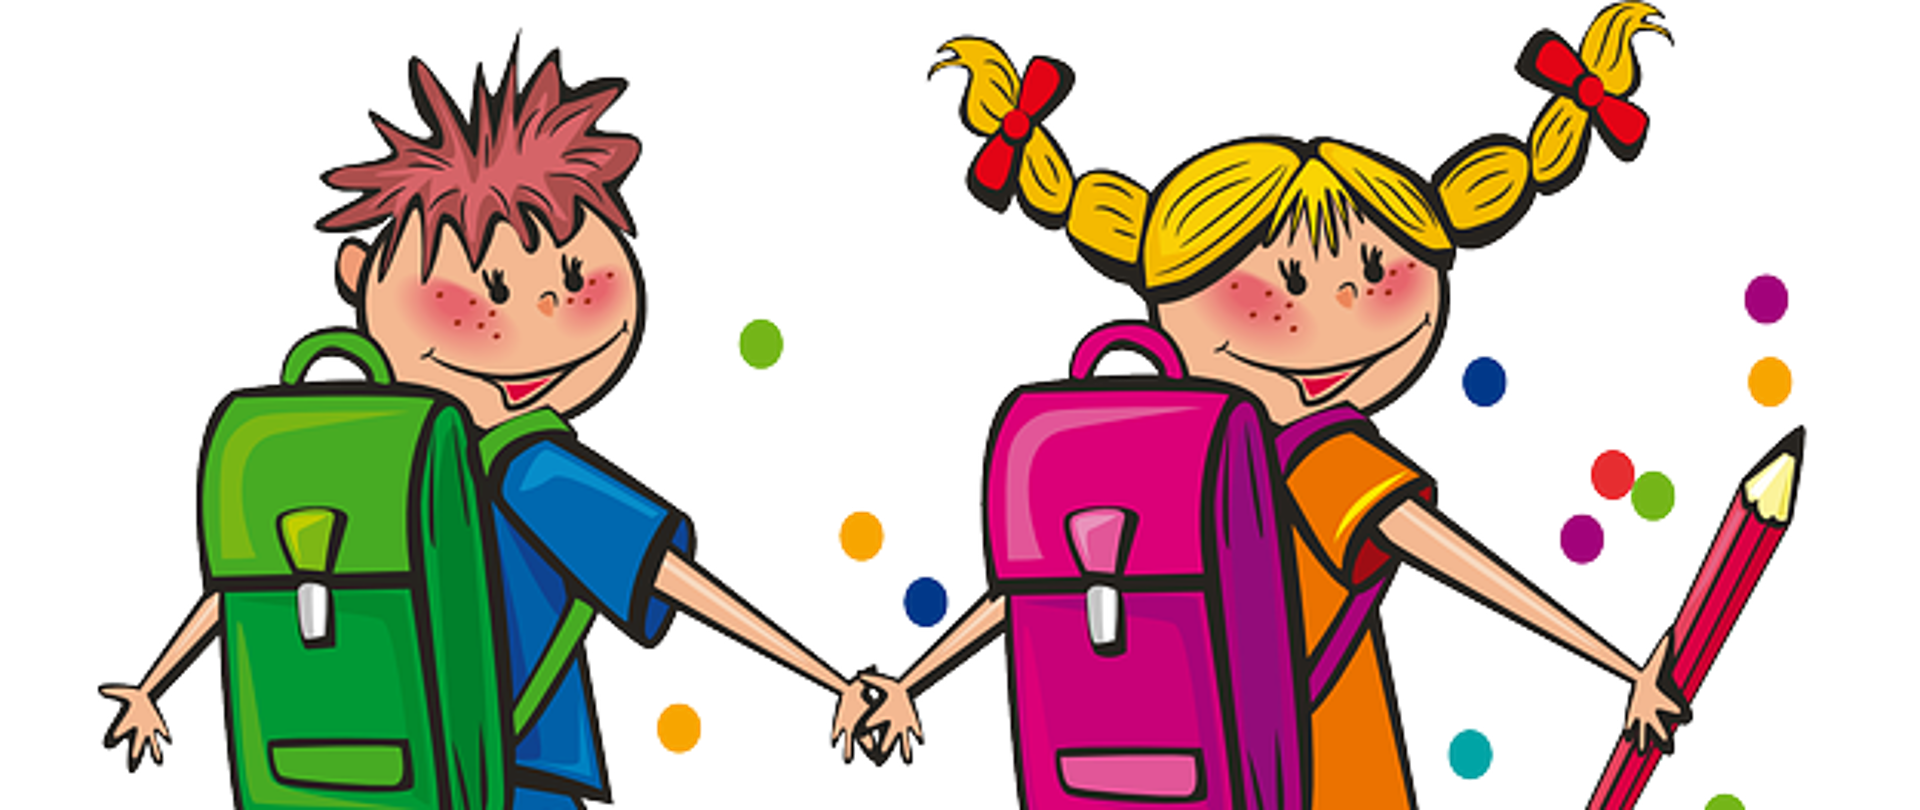 Grafika przedstawia chłopca i dziewczynkę trzymających się za ręce. Chłopiec ma brązowe włosy. Ubrany jest w niebieski podkoszulek i w zielony plecak. Dziewczynka o jasnych włosach ma zawiązane dwa warkocze z czerwonymi kokardkami. Ubrana jest w pomarańczowy podkoszulek i w różowy plecak. W ręce trzyma czerwony ołówek. W tle znajdują się kolorowe kropki.